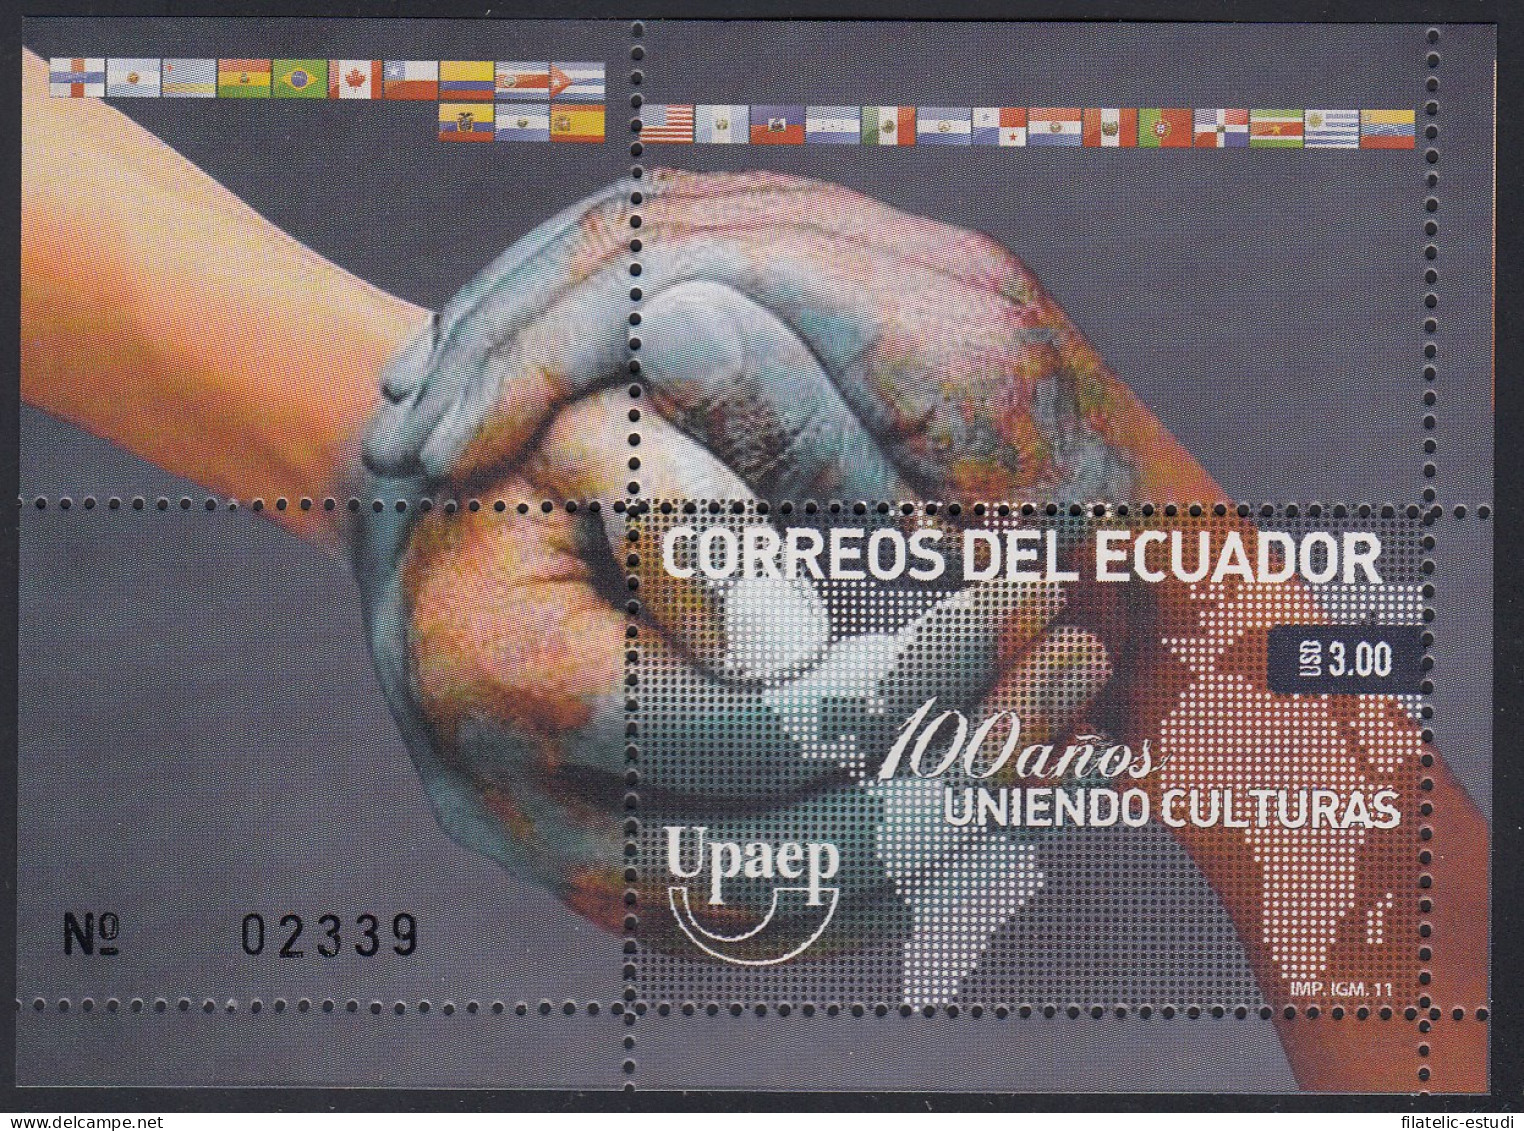 Upaep Ecuador HB 157 2011 100 Años Uniendo Culturas MNH - Sonstige - Amerika